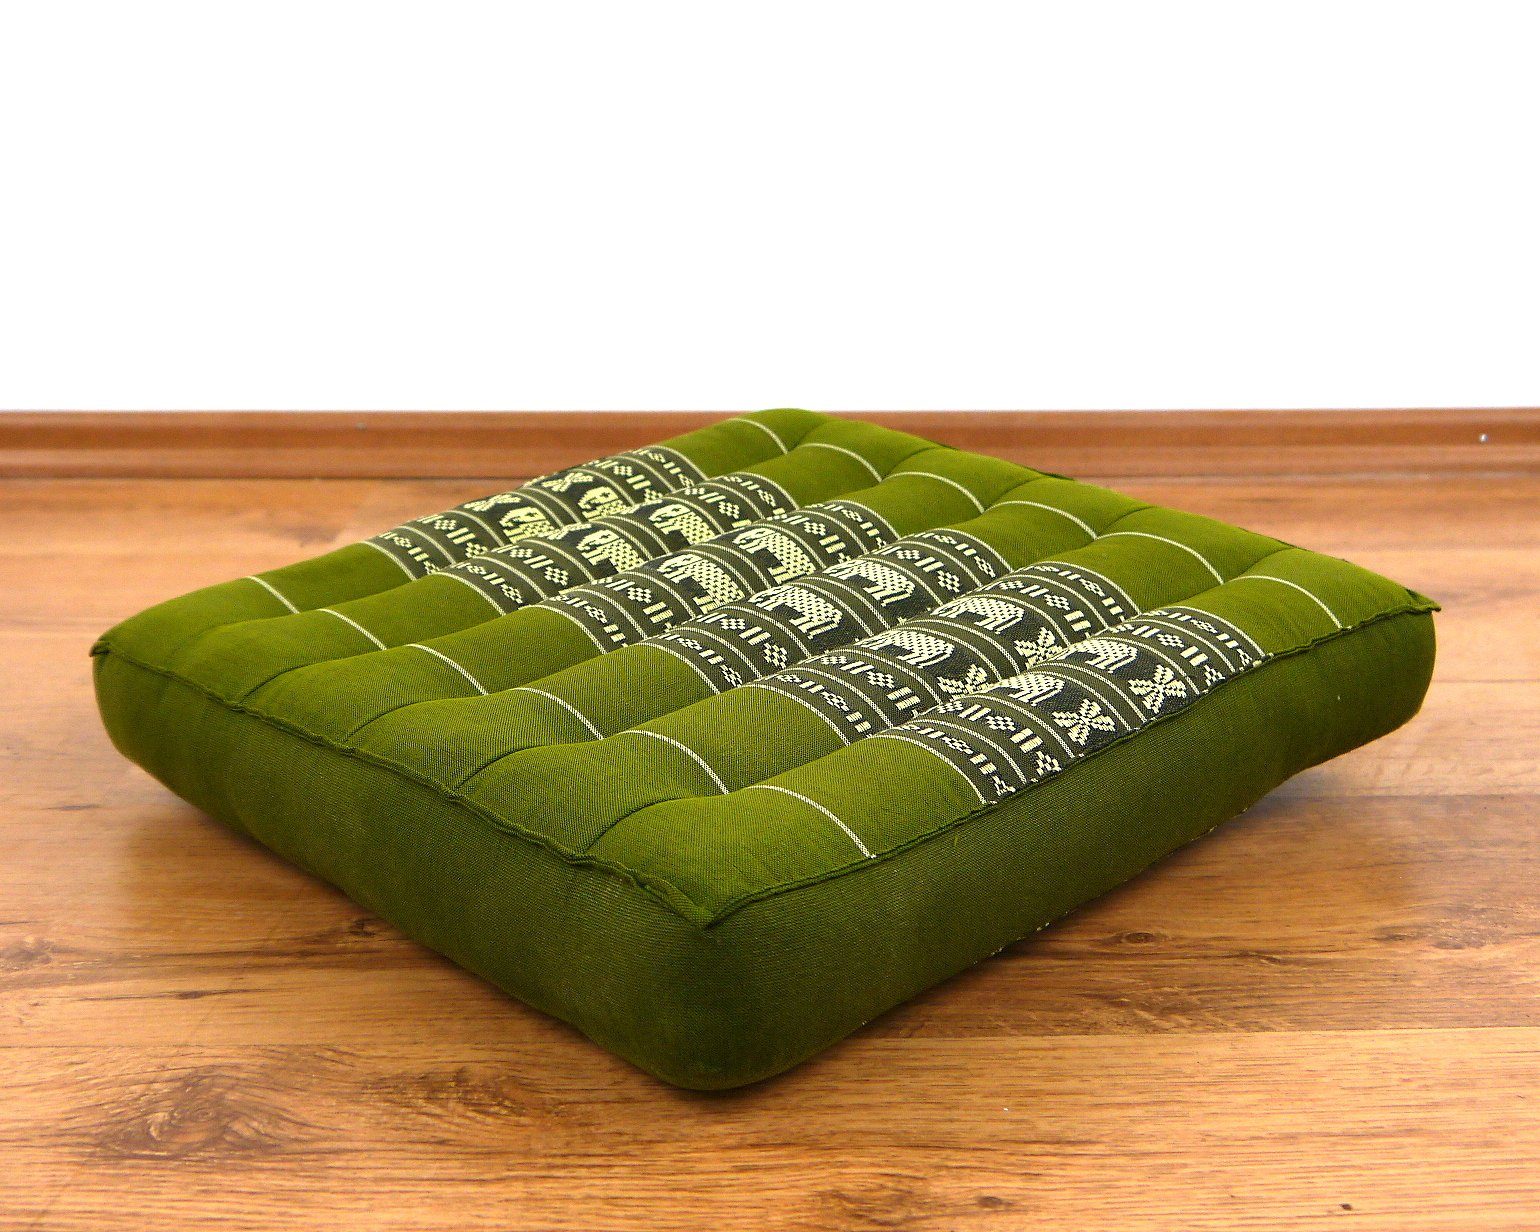 grün Elefanten Sitzkissen und Kapok livasia vegan 35x35x6cm, 35 cm, Sitzkissen handgefertigt, /